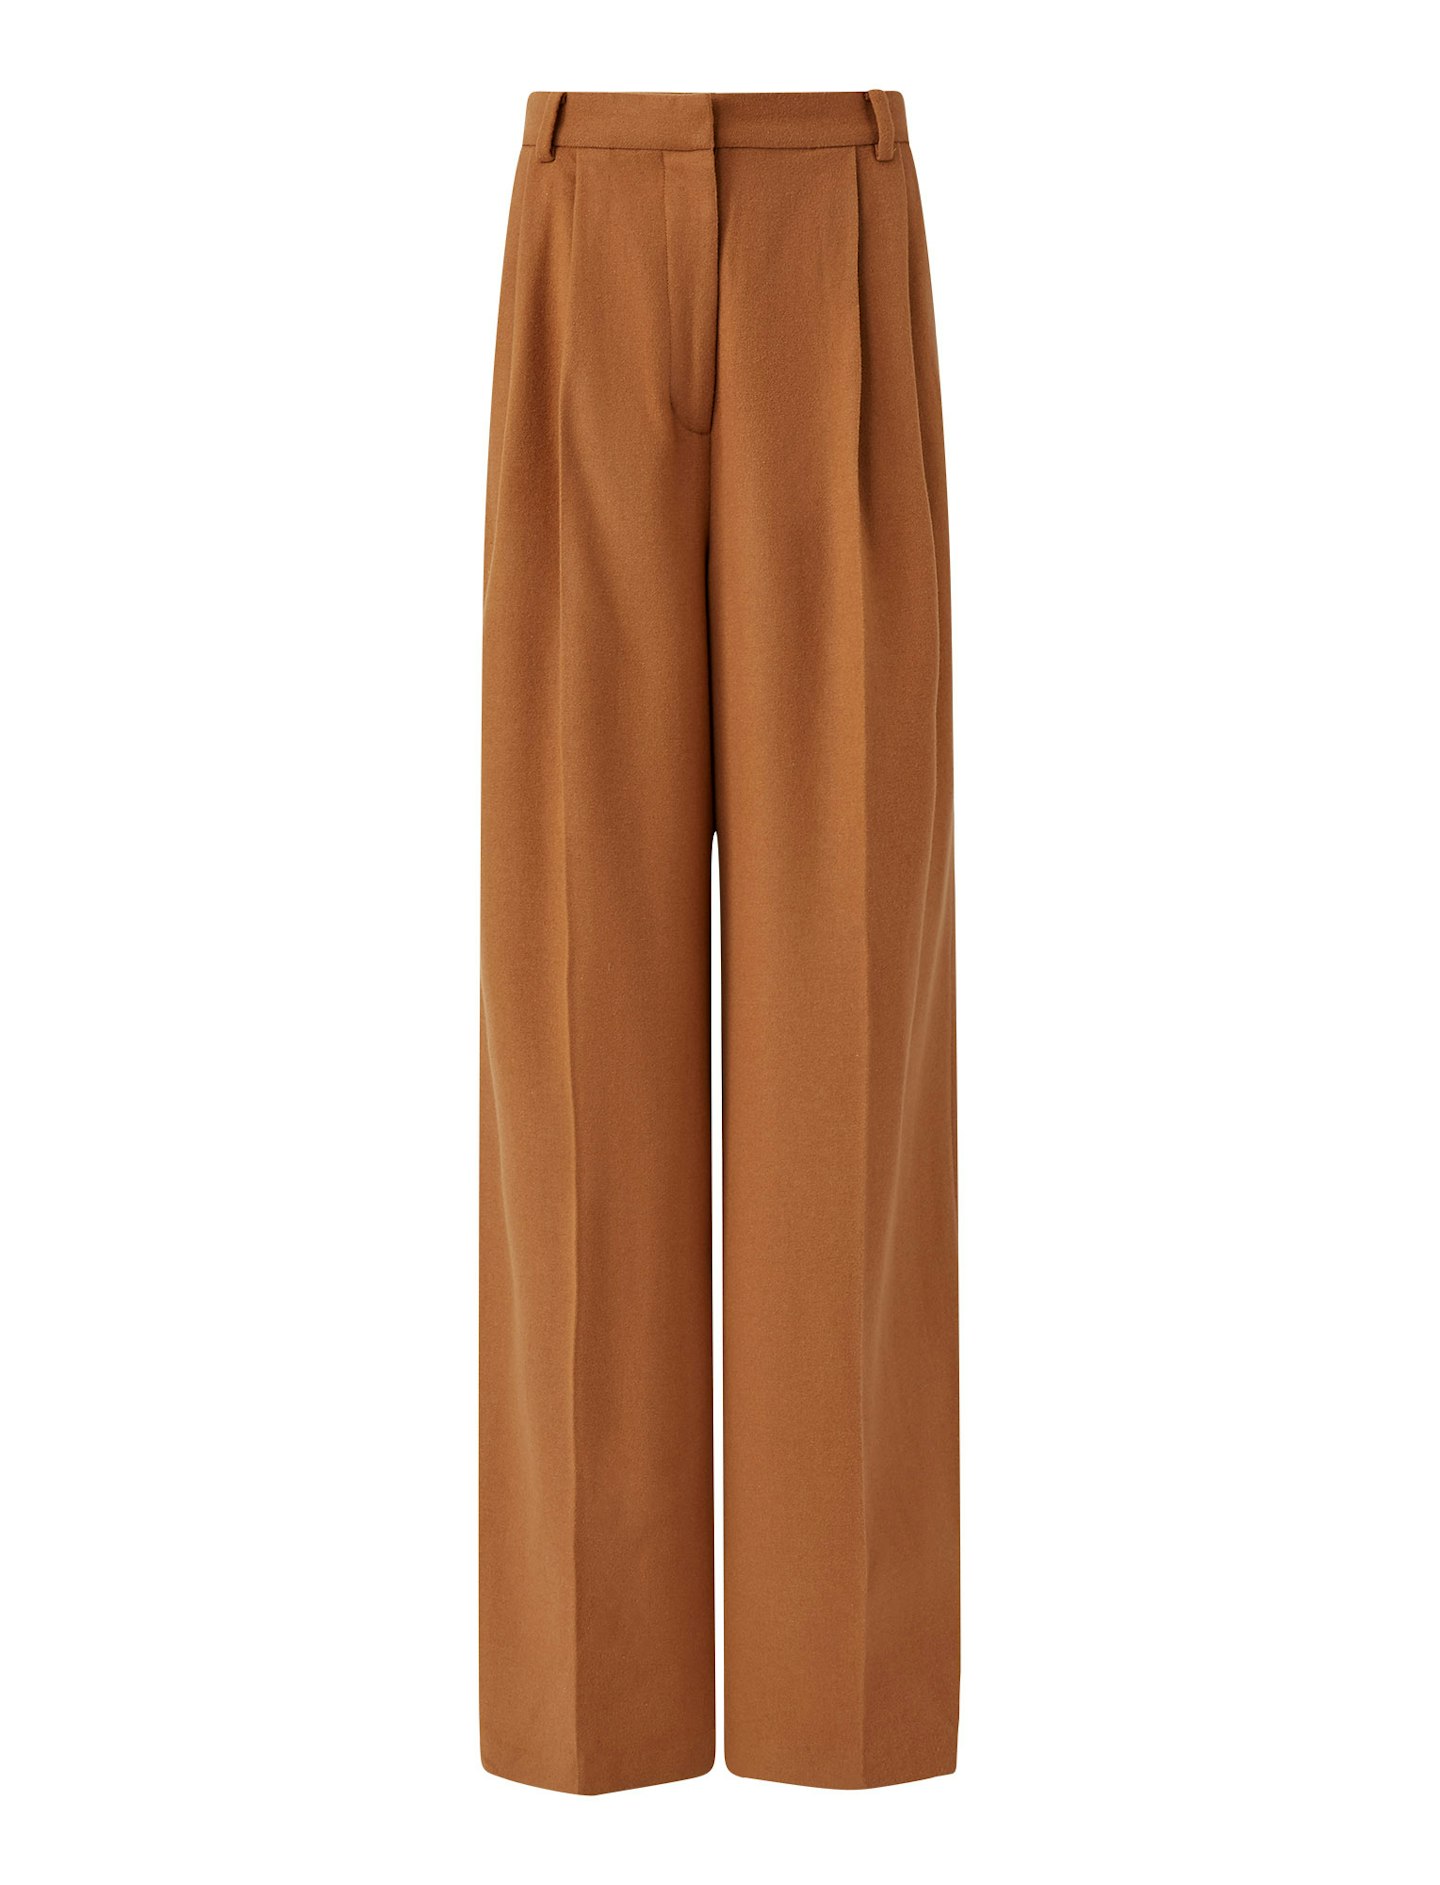 Joseph, Silk Wool Flannel Trousers, £425